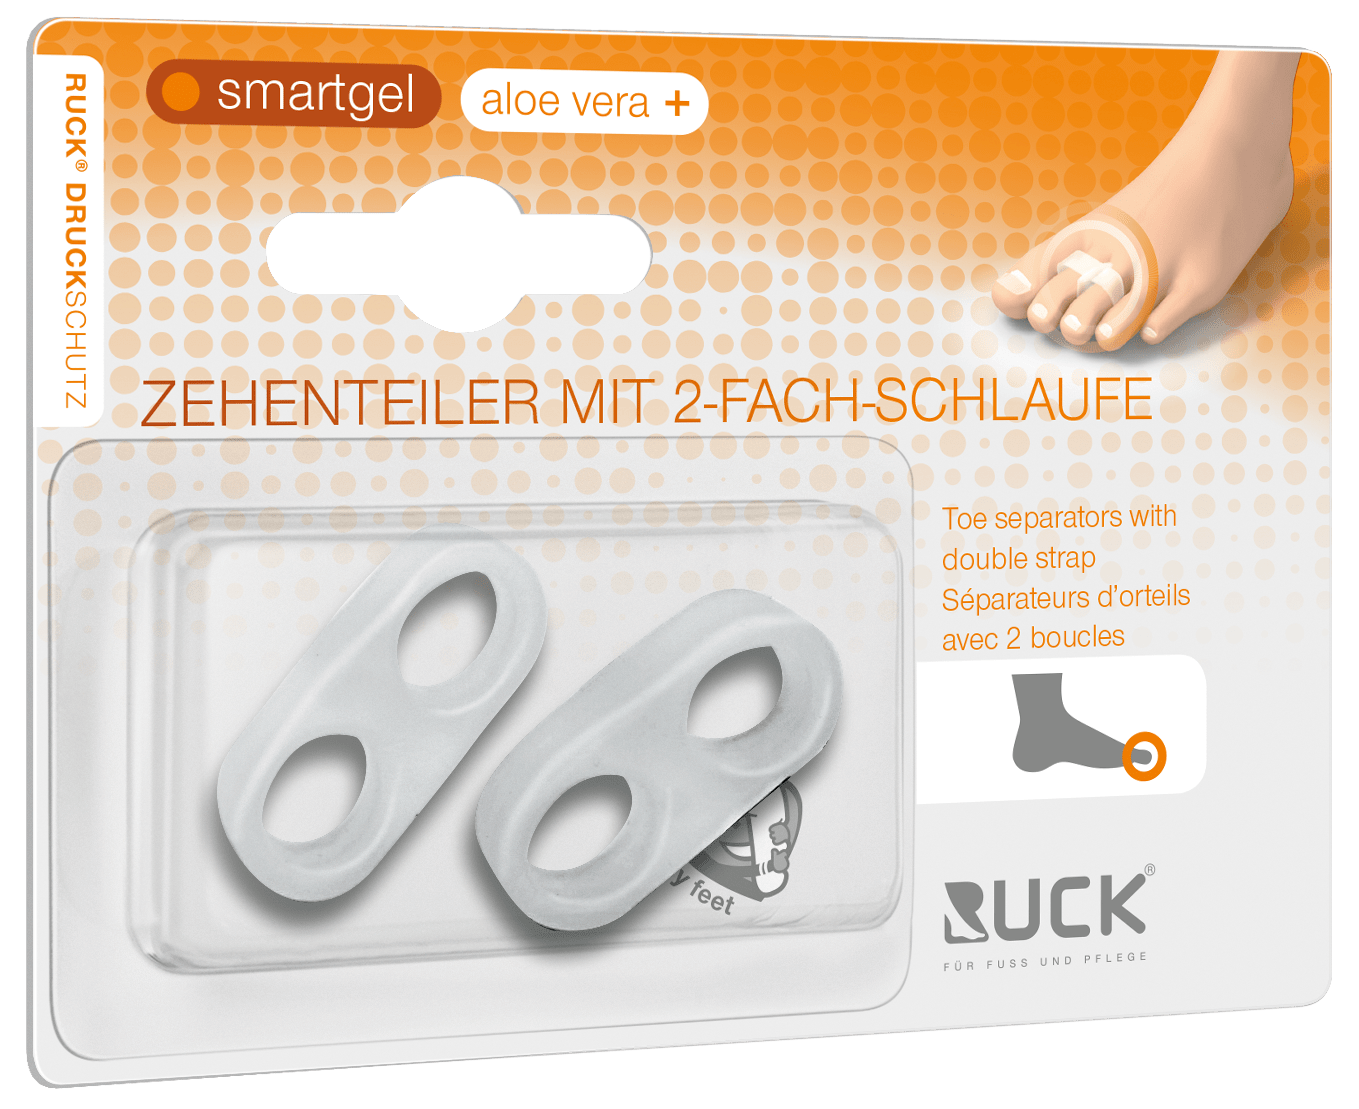 RUCK DRUCKSCHUTZ - Zehenteiler mit 2-fach Schlaufe